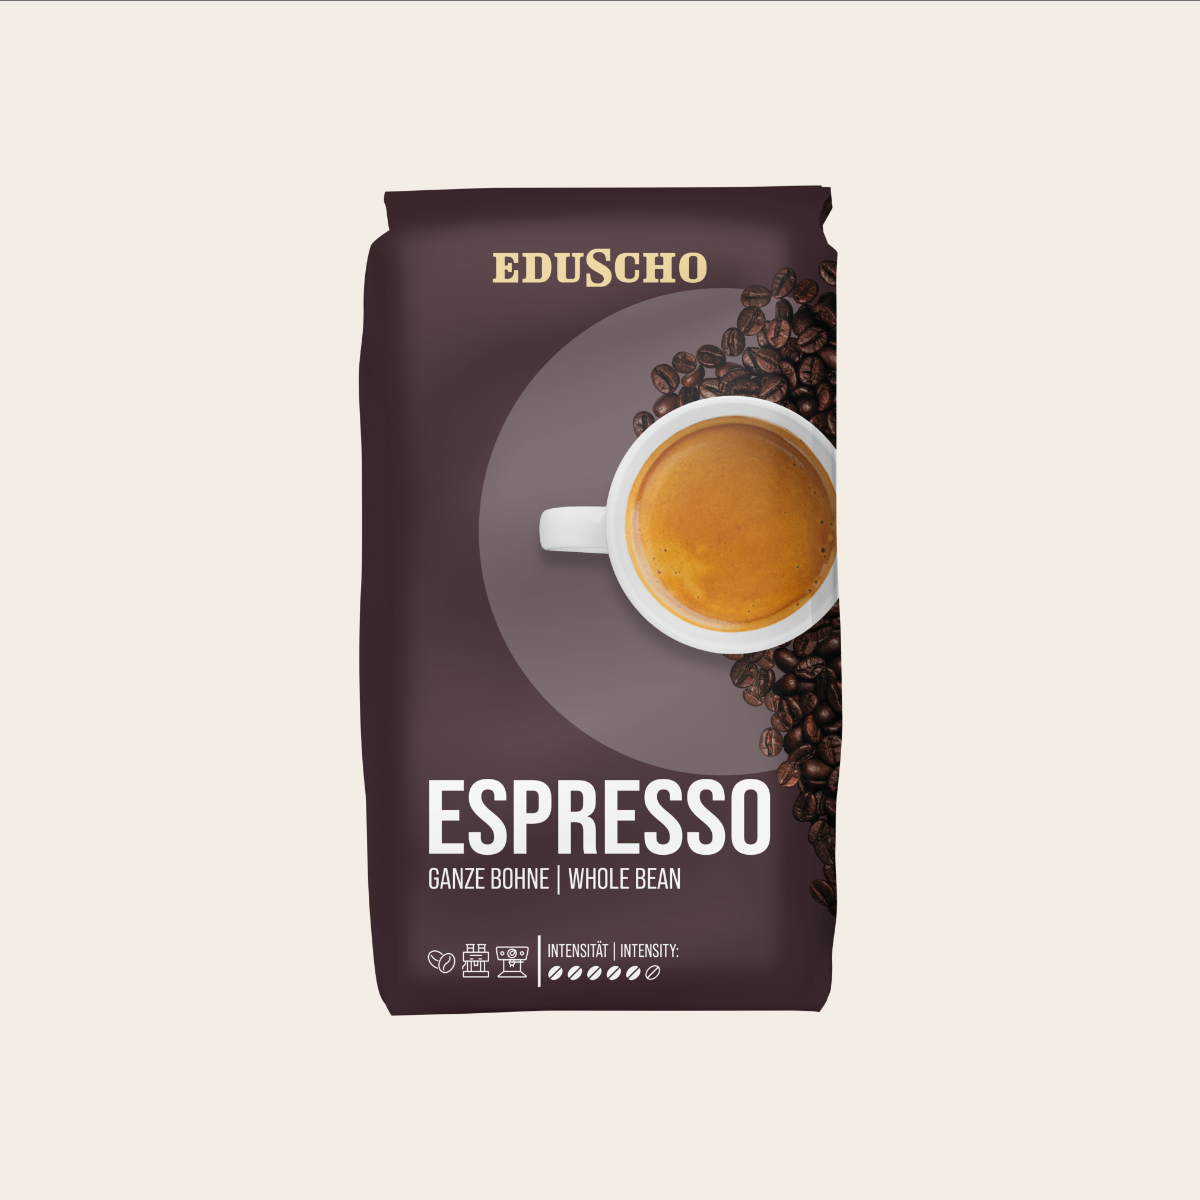 EDUSCHO Espresso, 1.000g